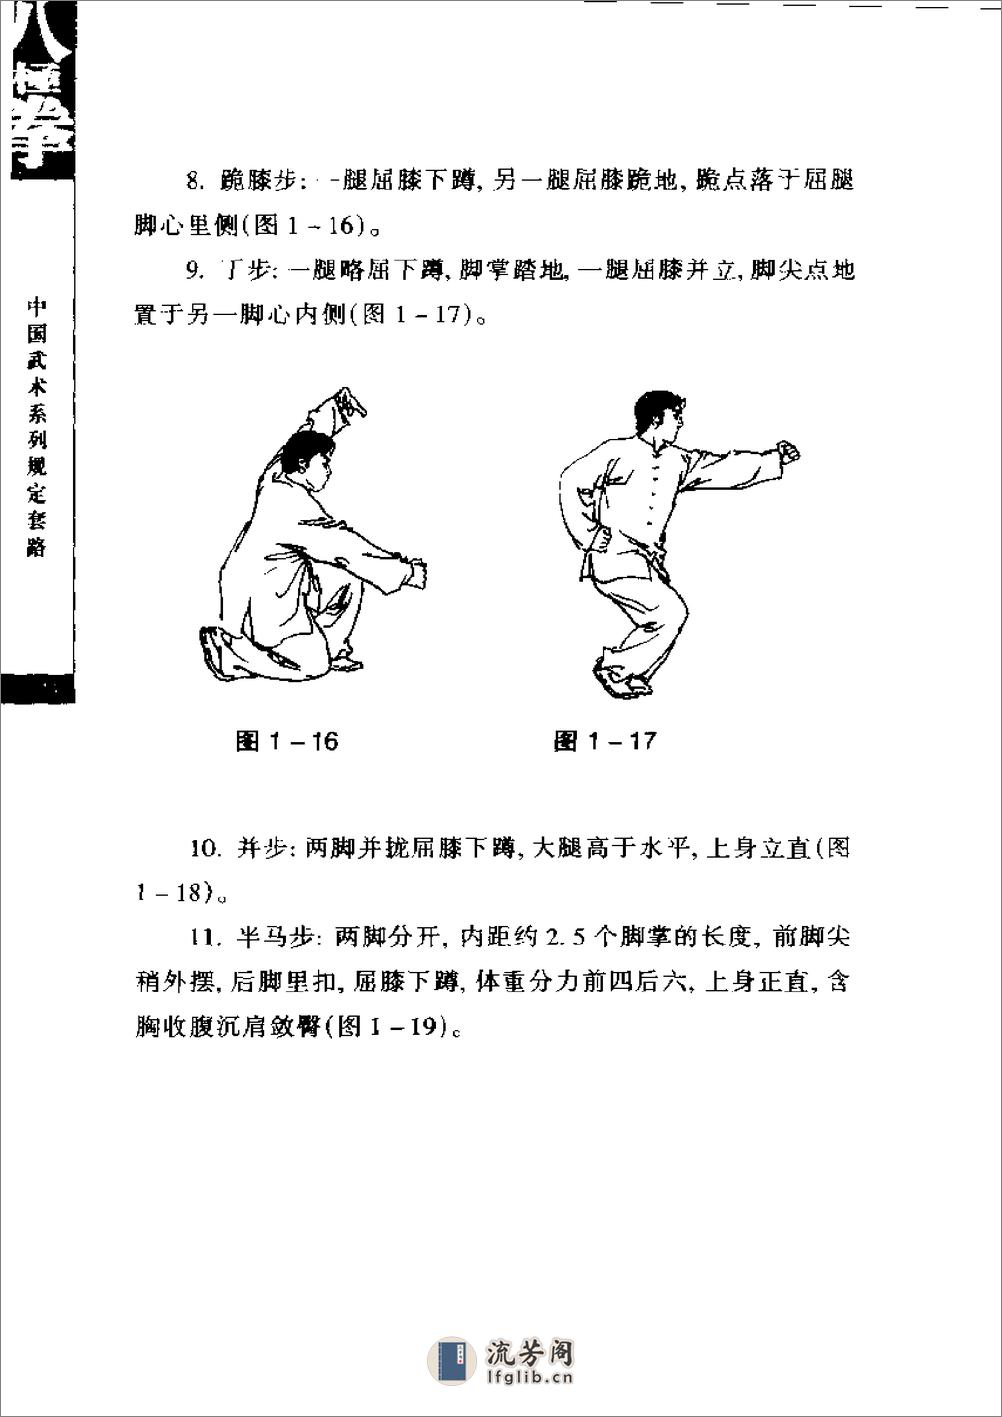 《八极拳》中国武术系列规定套路编写组 - 第16页预览图